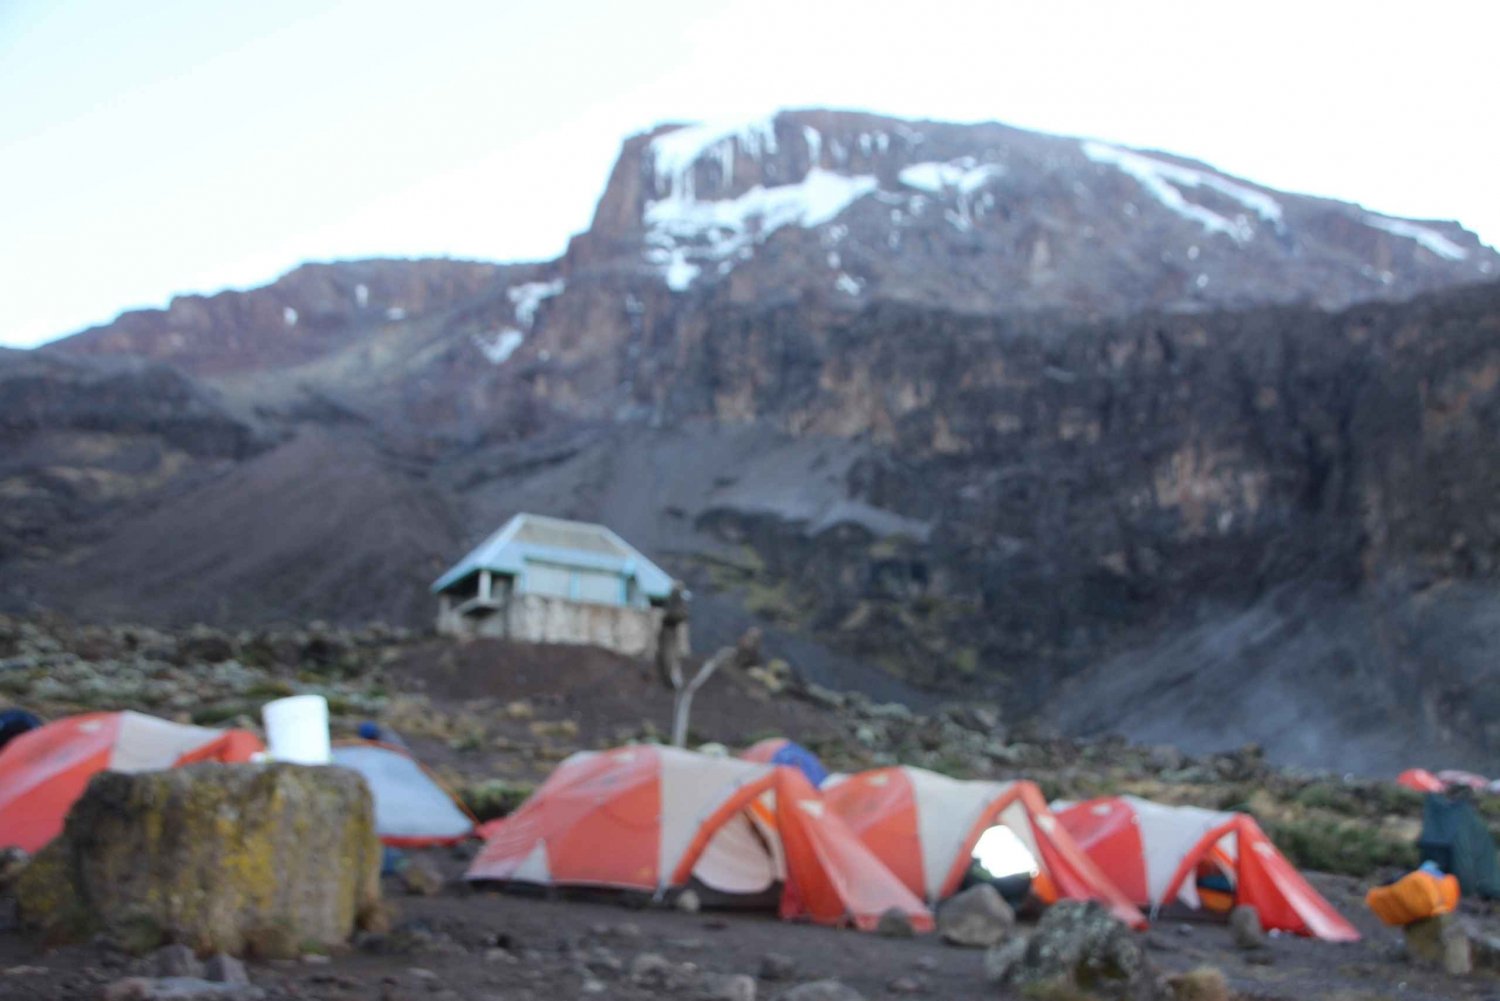 Tour di 8 giorni per la scalata del Monte Kilimanjaro attraverso la via Lemosho